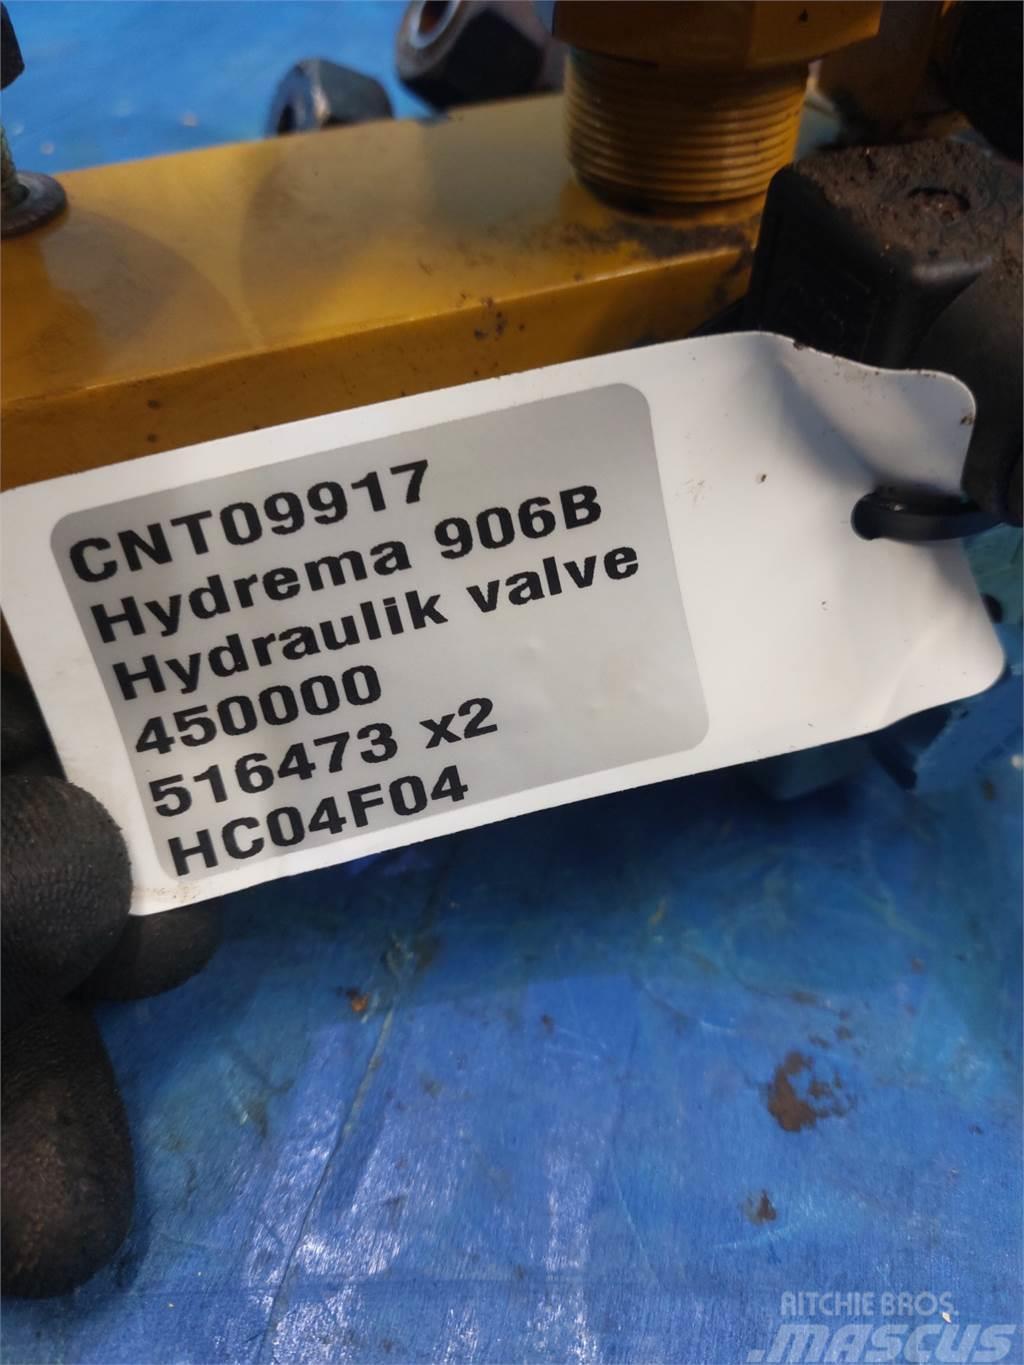 Hydrema 906B Hydraulics